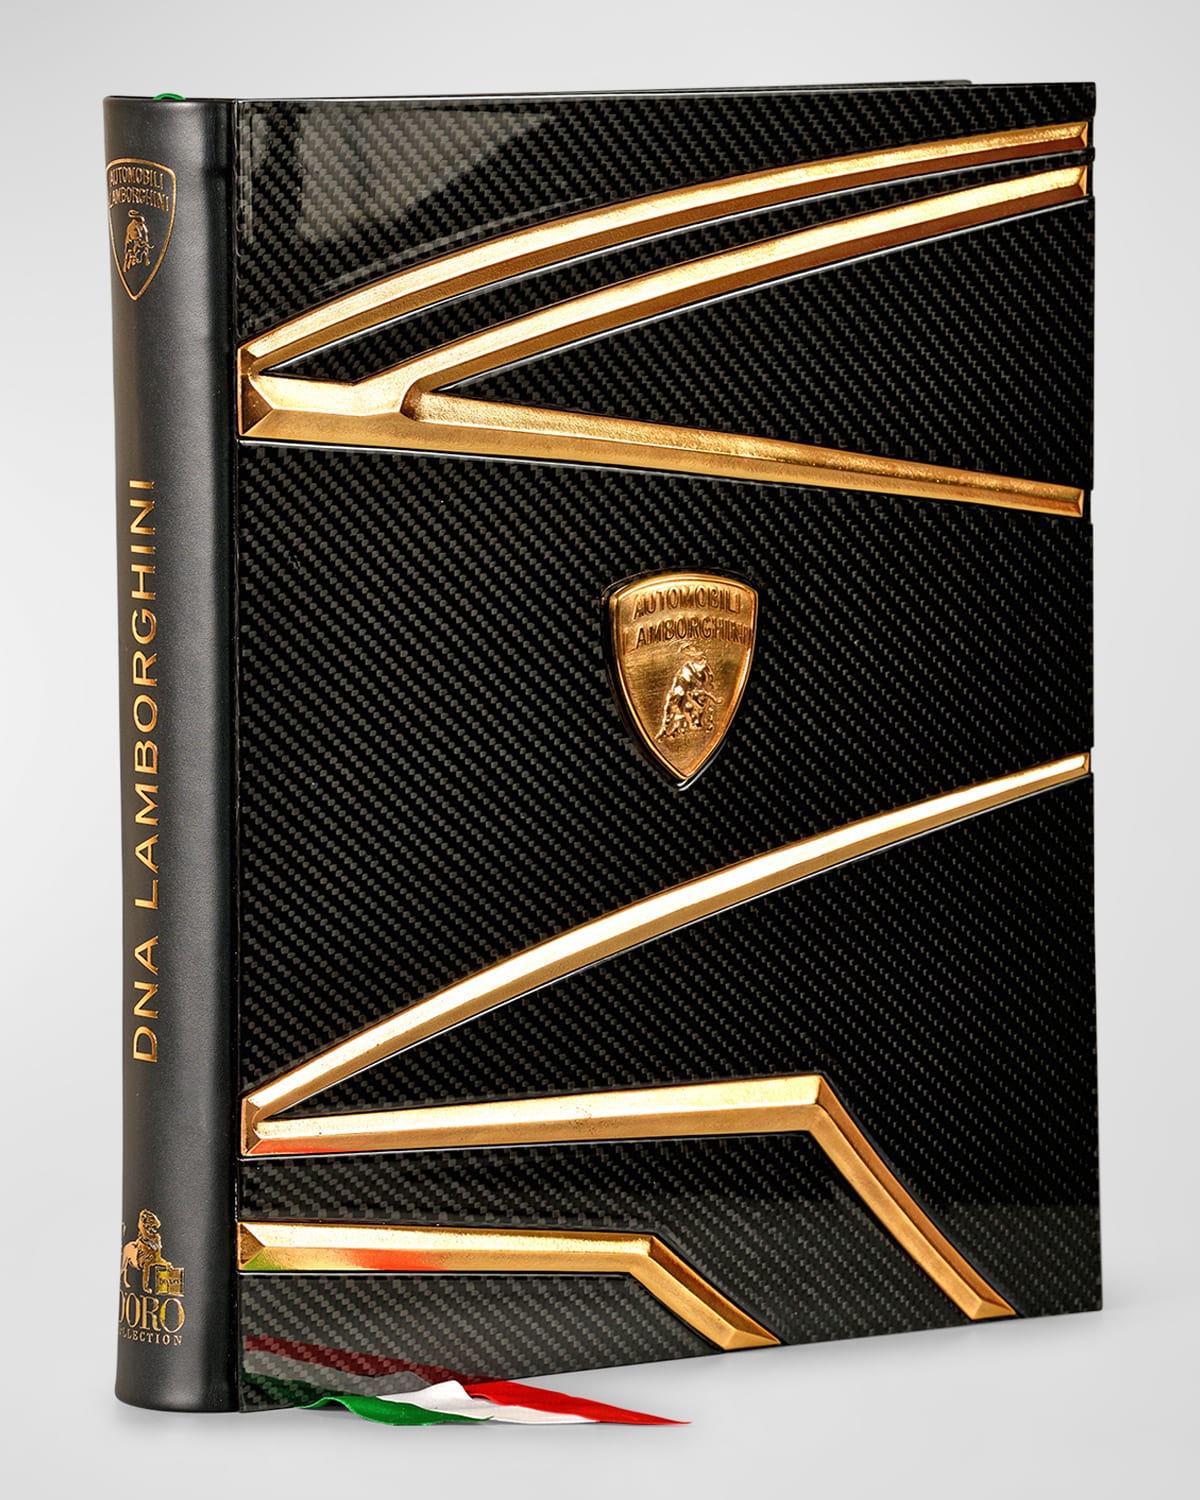 "DNA Lamborghini (Second Edition)" Limited Edition Book